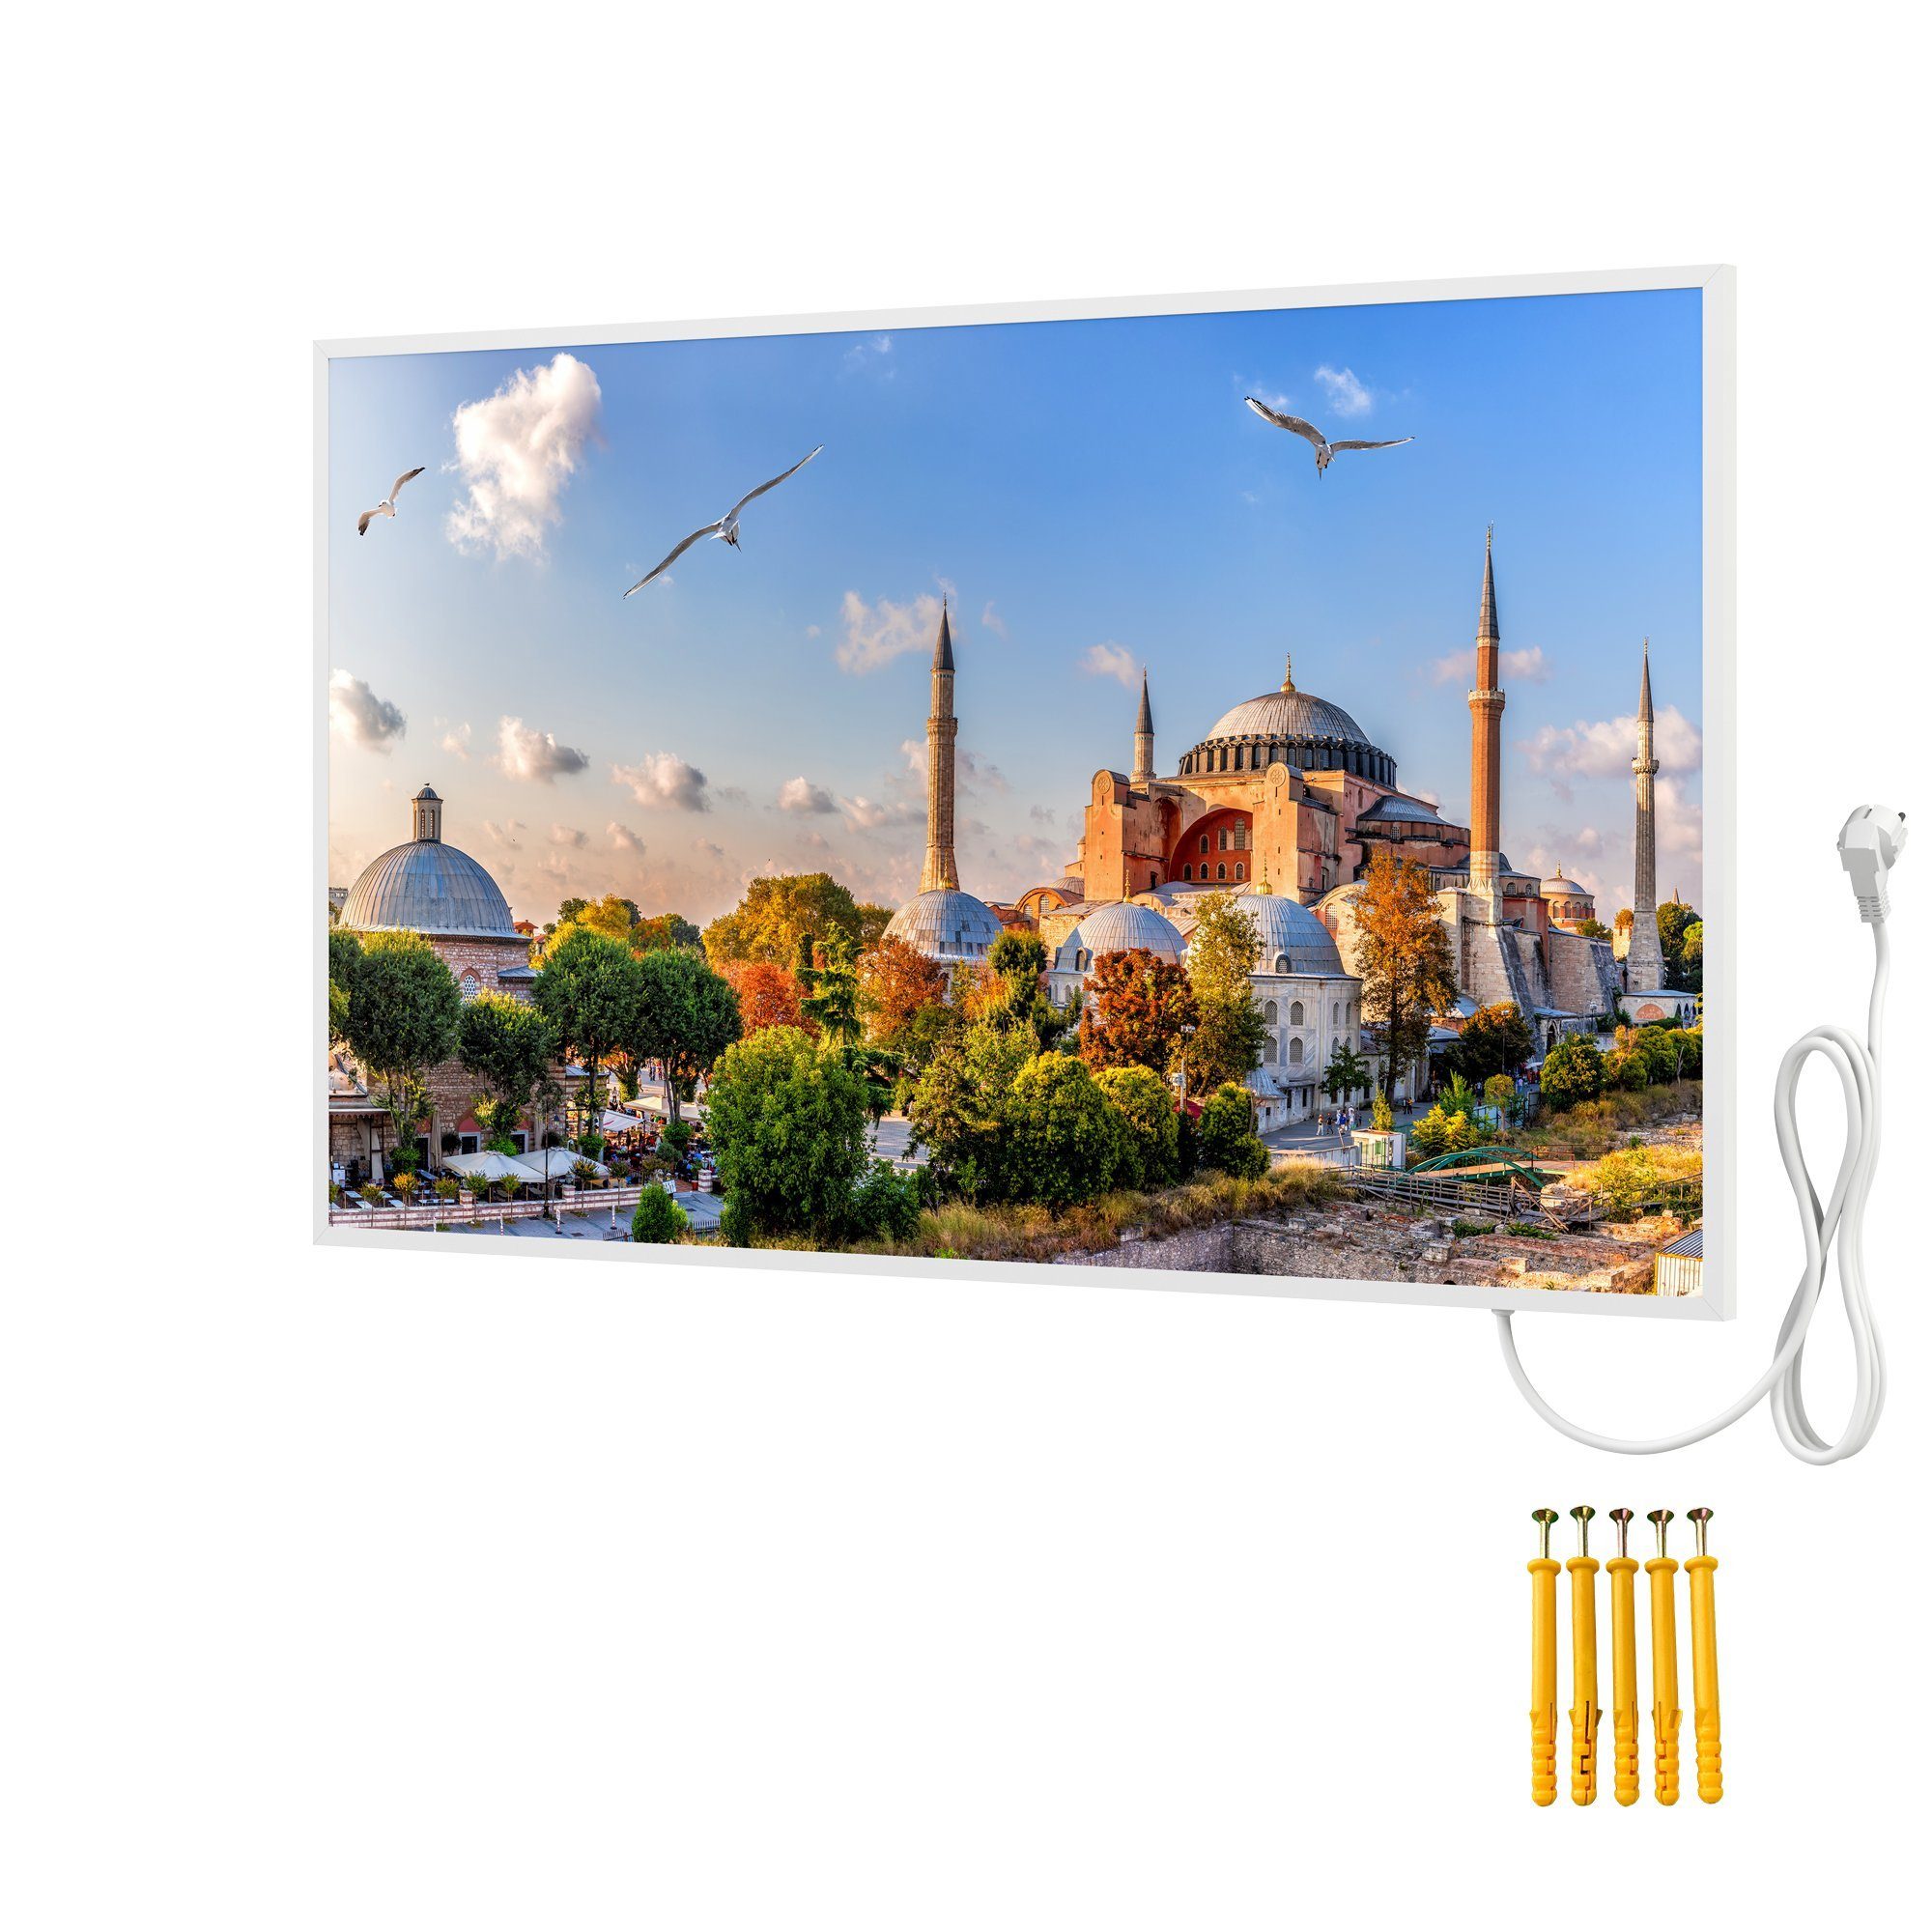 Bringer Infrarotheizung Bildheizung, Bild Infrarotheizung mit Rahmen, Motiv: Istanbul, Türkei